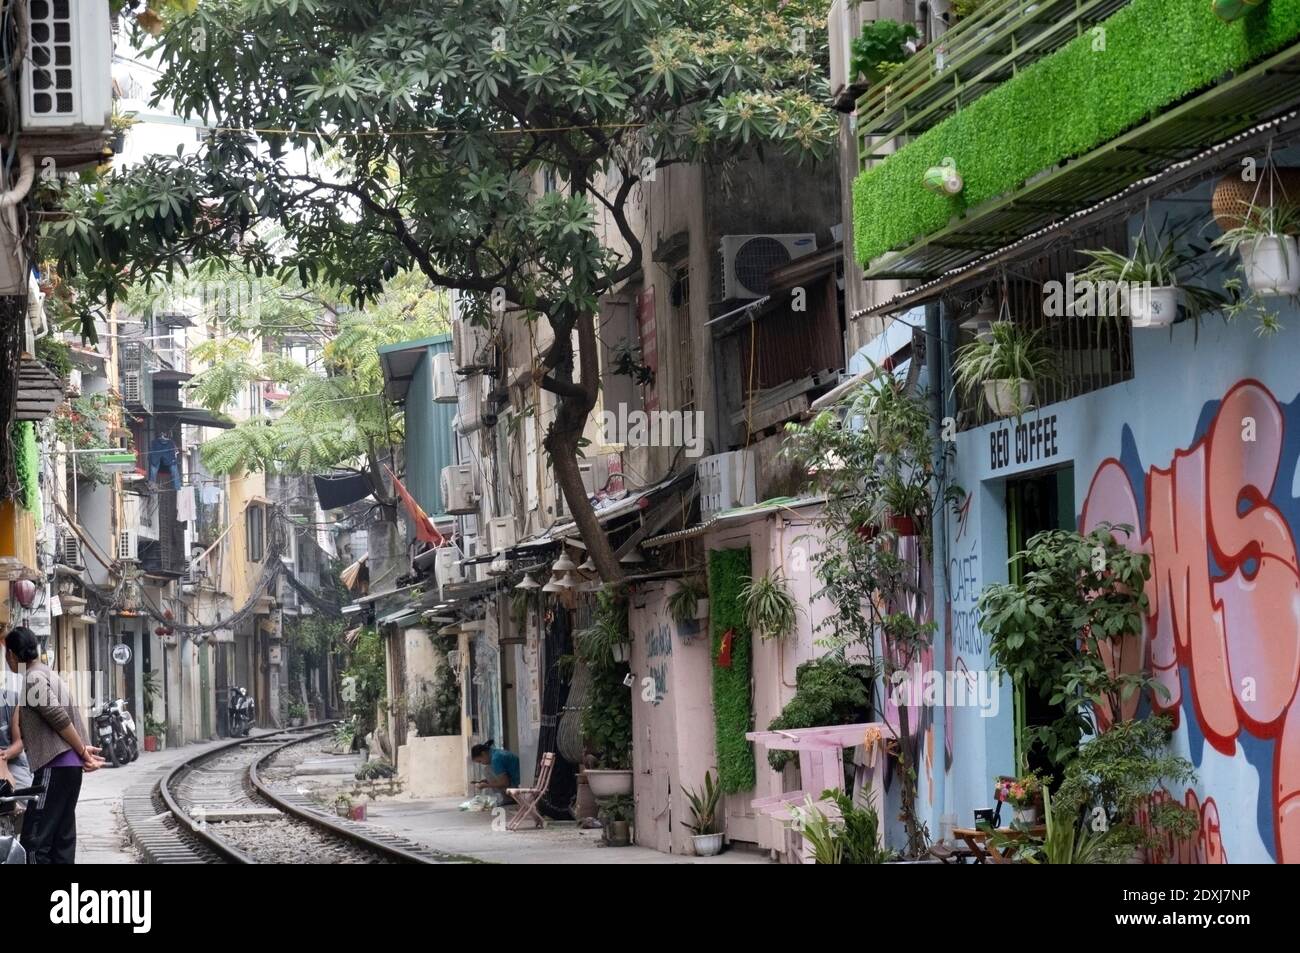 Railway line running between buildings in Hanoi Stock Photo